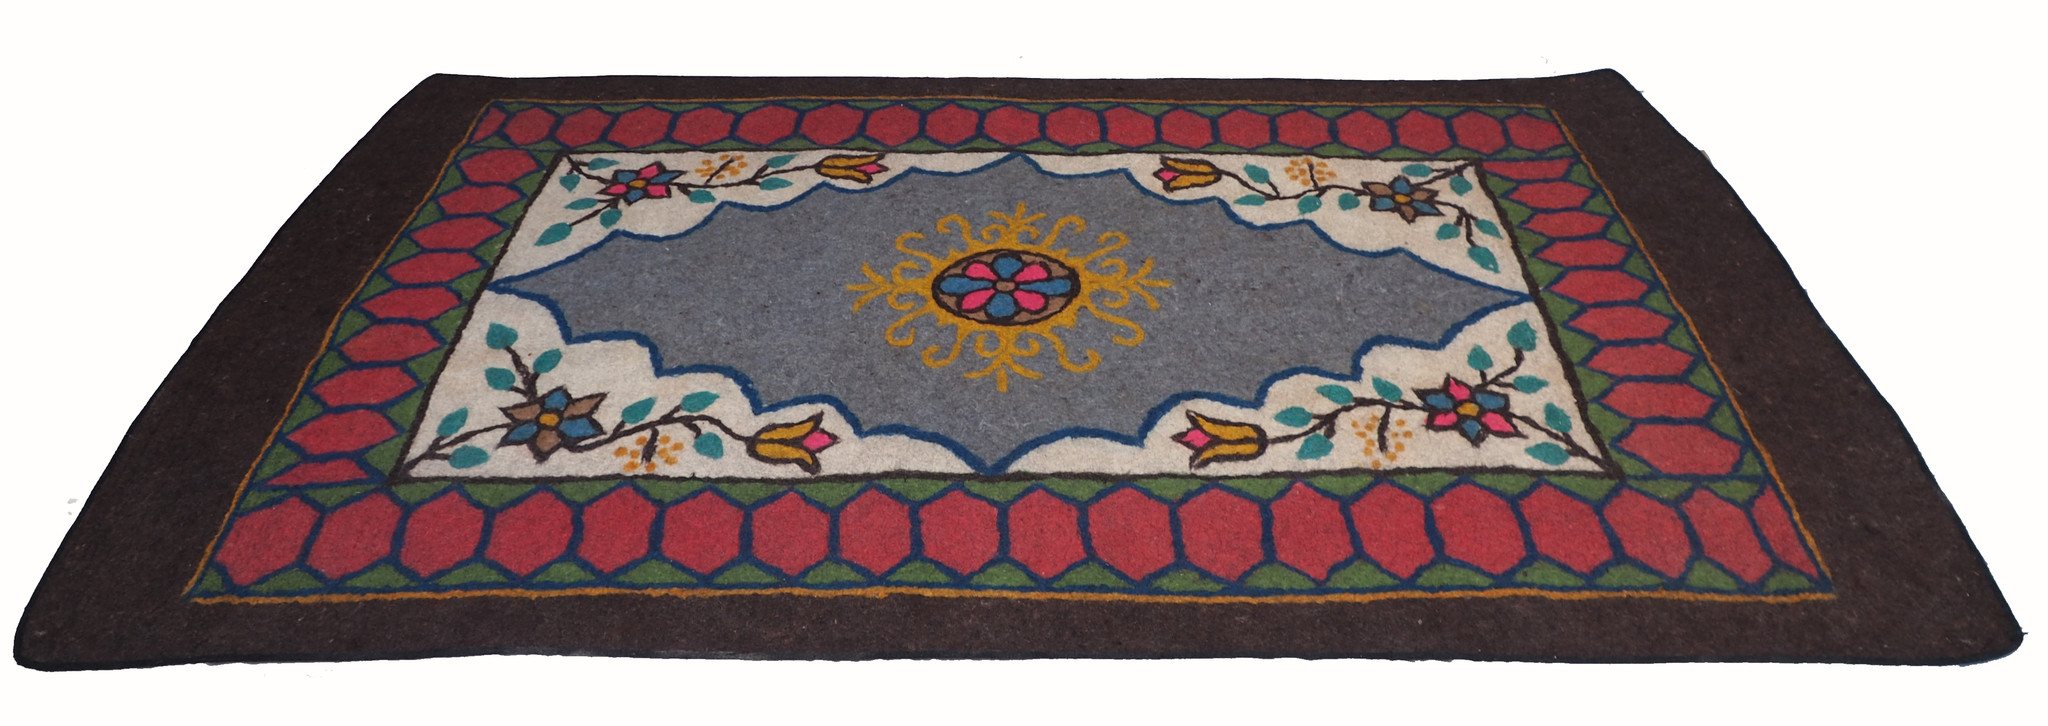 331x200 cm orient handgewebte Teppich Nomaden handgearbeitete Turkmenische nomanden Jurten Filzteppich Filz aus Nor Afghanistan shyrdak N706